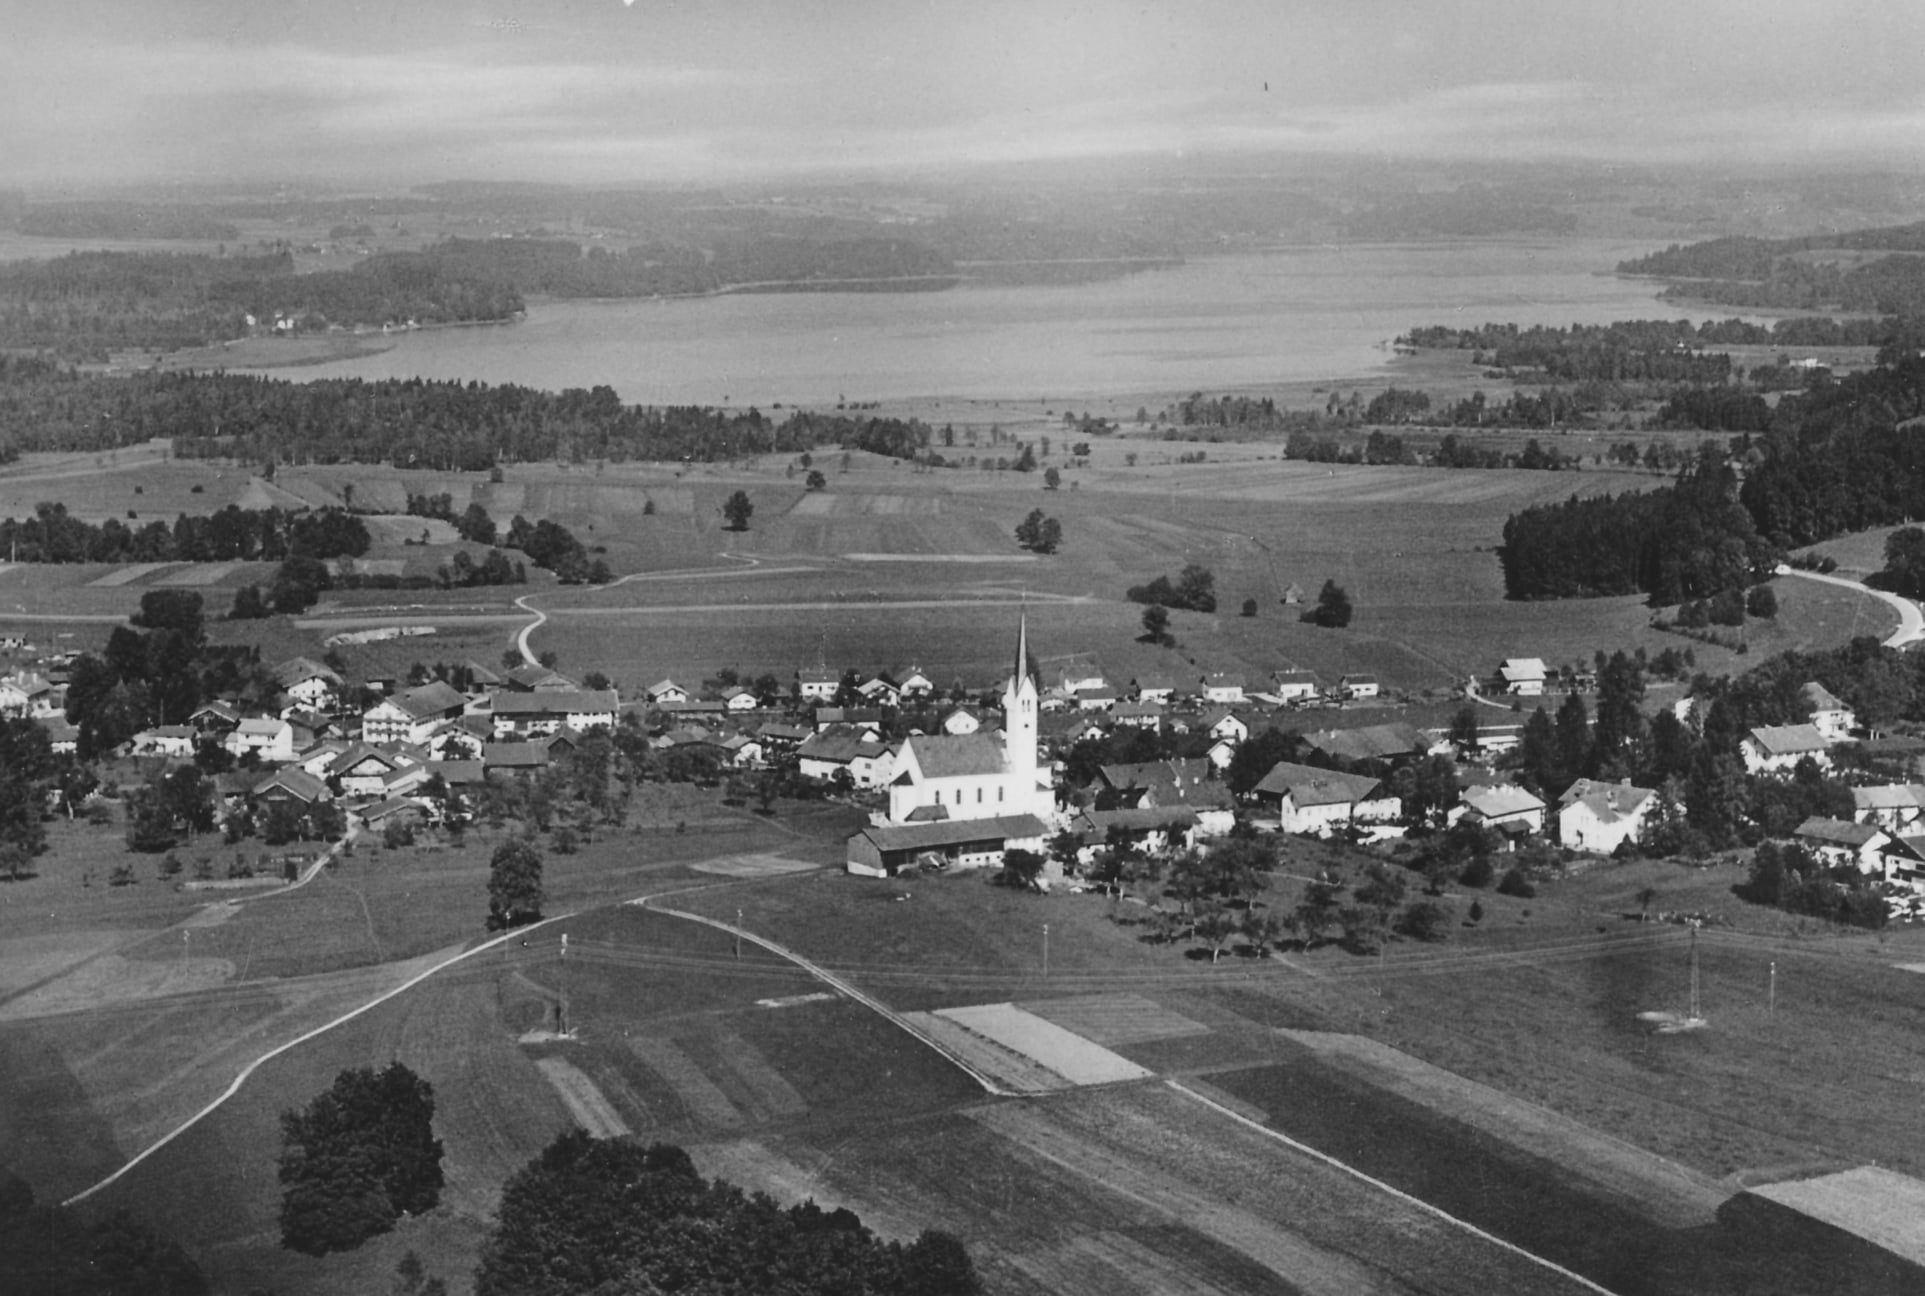 Luftaufnahme der Gemeinde Riedering aus dem Jahr 1961